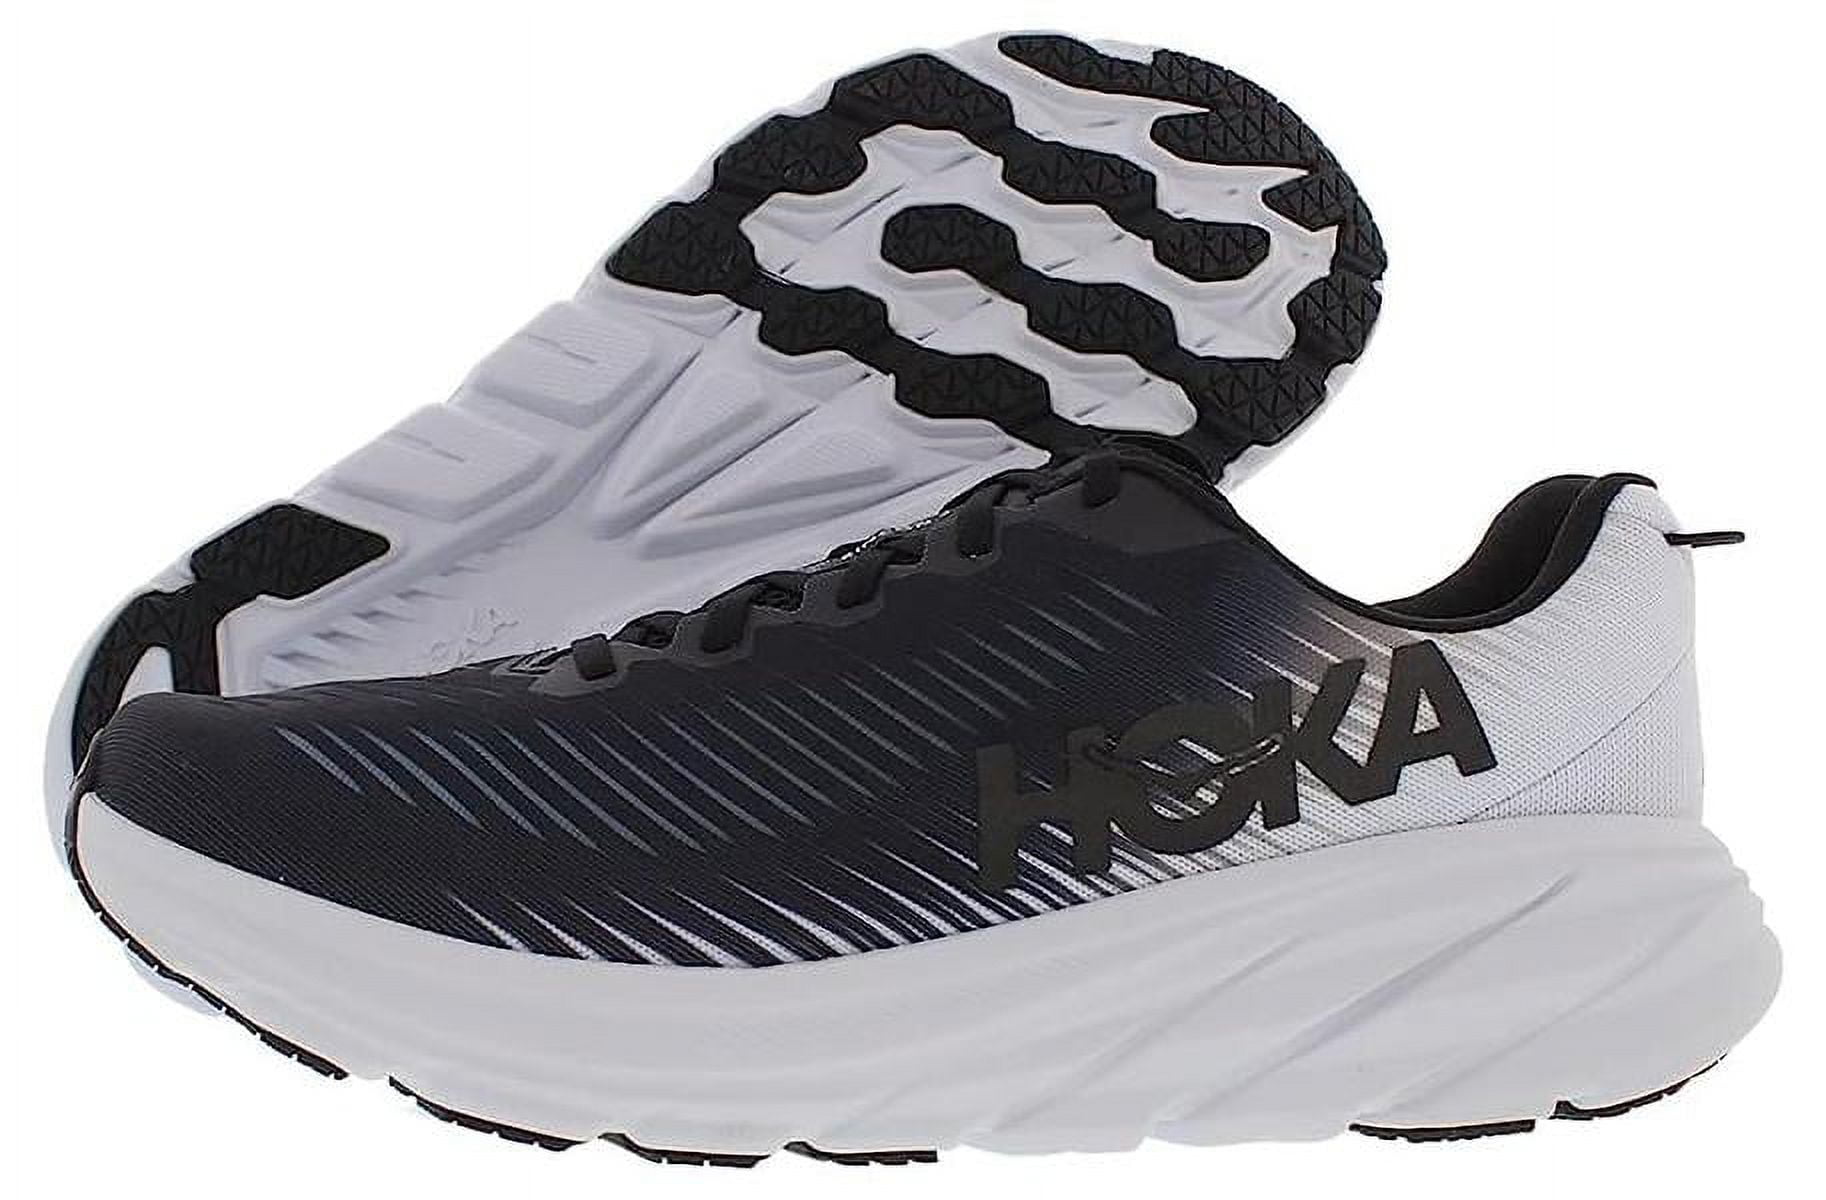 HOKA ONE Rincon 3 Mens Running Shoes - Black/White - 12.5 - Walmart.com